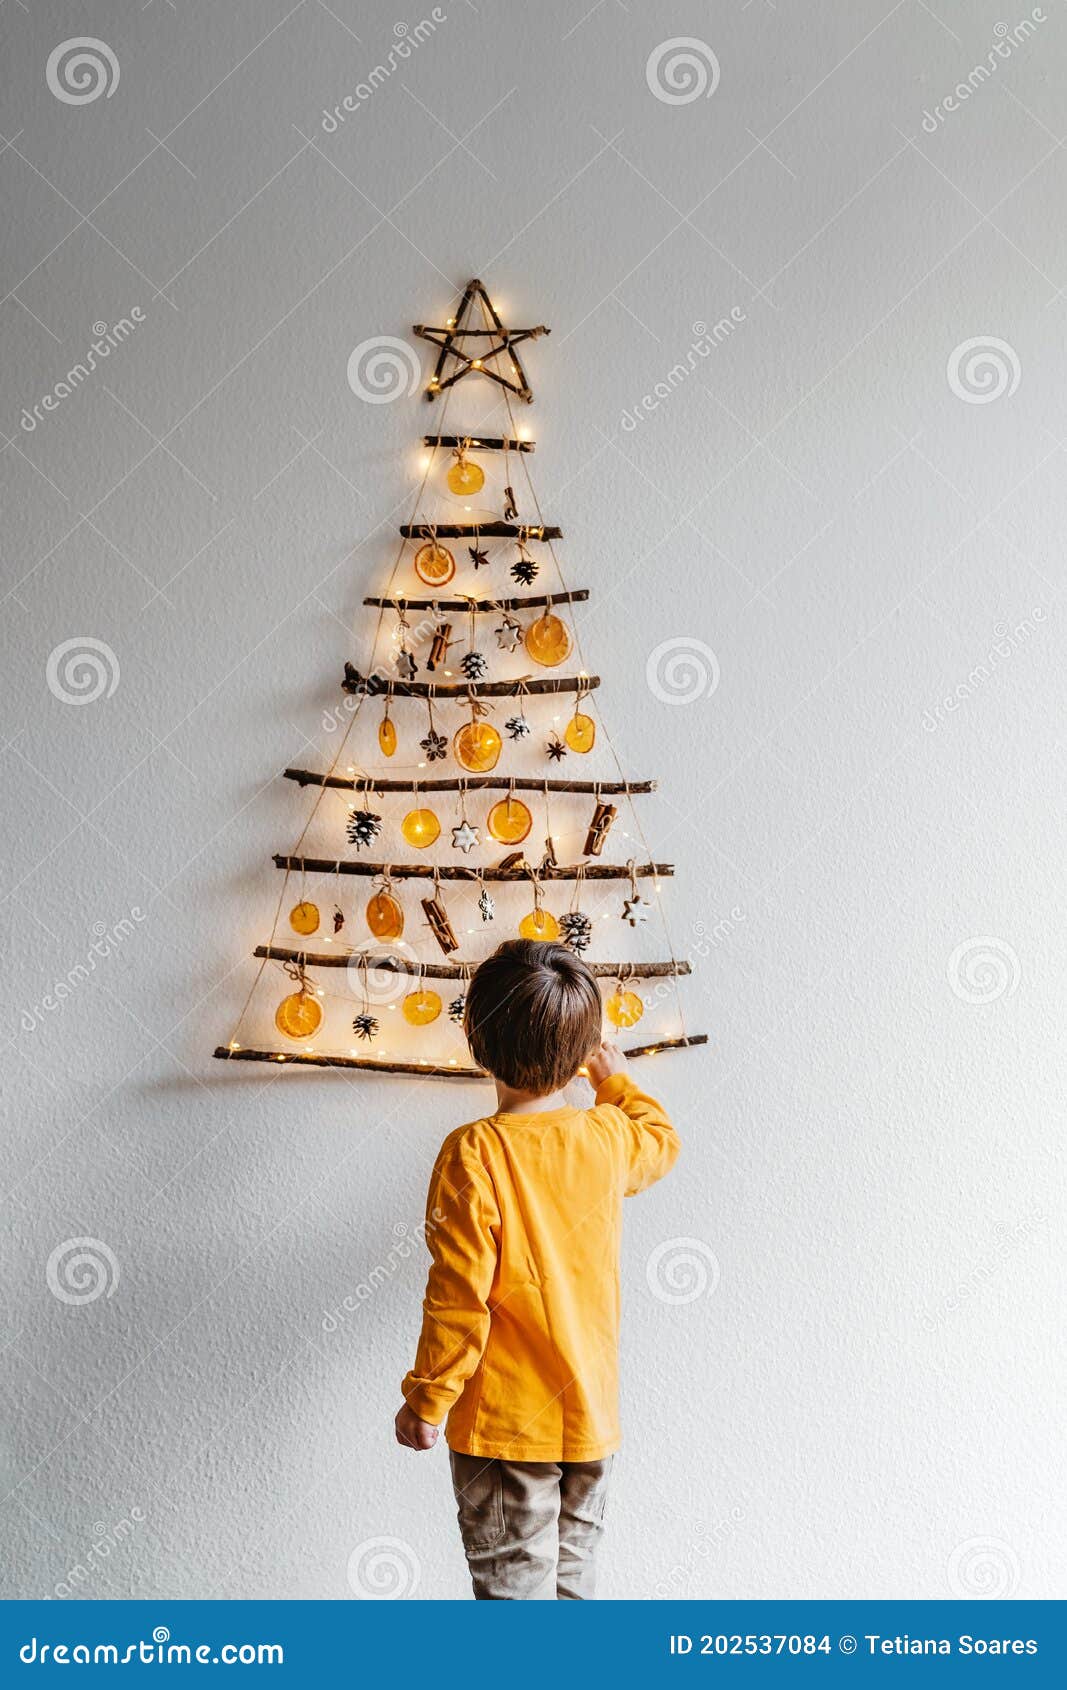 Pequena árvore De Natal Artesanal De Decoração Artesanal Feita De Paus E  Materiais Naturais Pendurados Na Parede. Foto de Stock - Imagem de canela,  alaranjado: 202537084